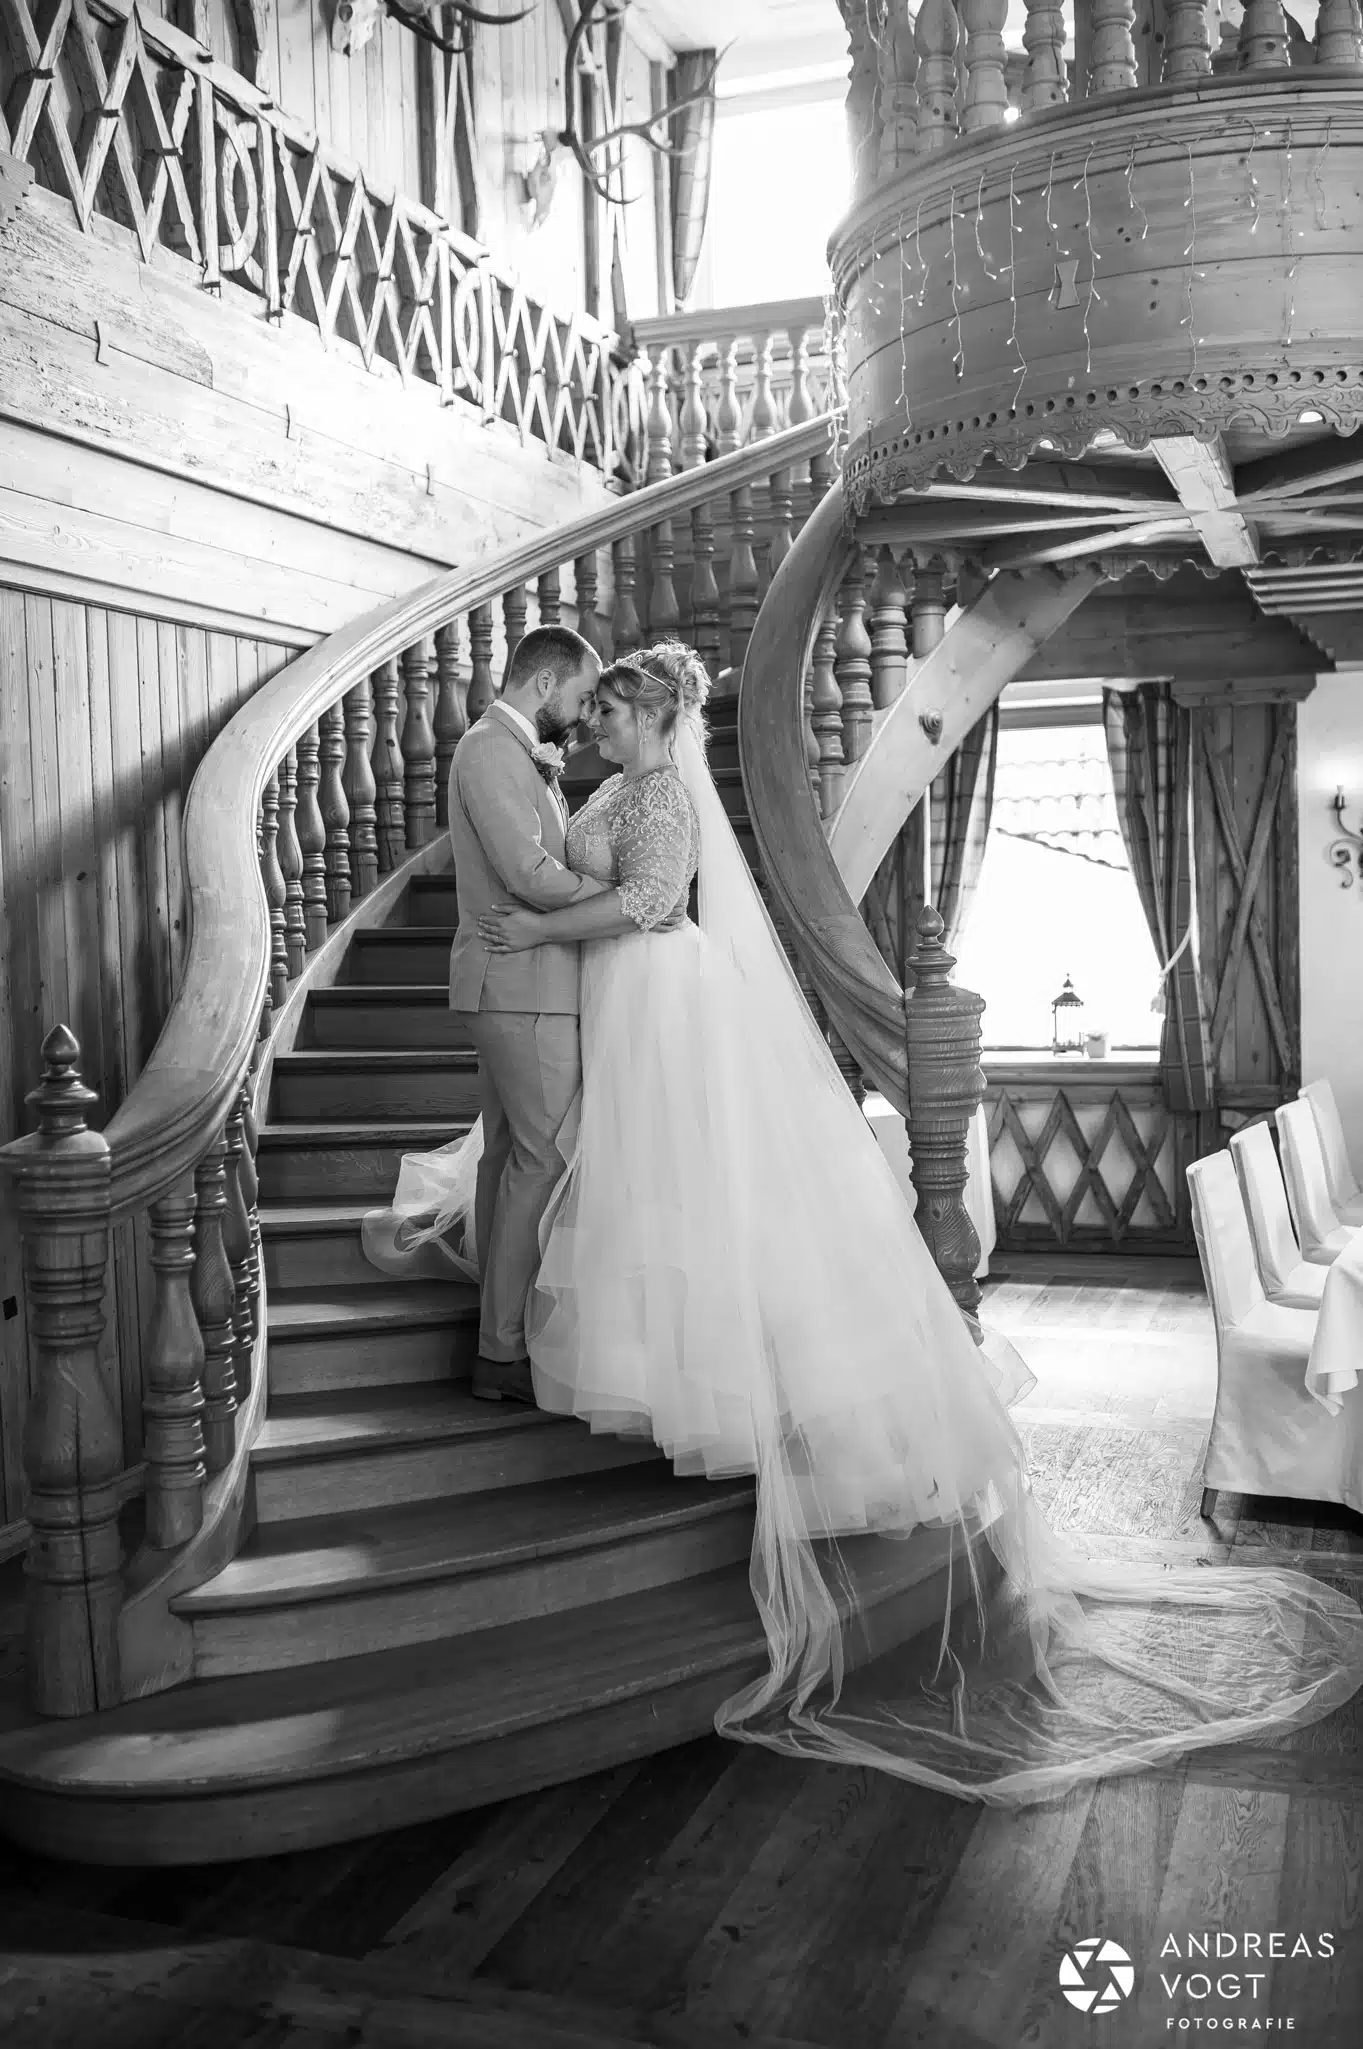 Brautpaarfoto in schwarz-weiß im Restaurant - Fotograf Andreas Vogt